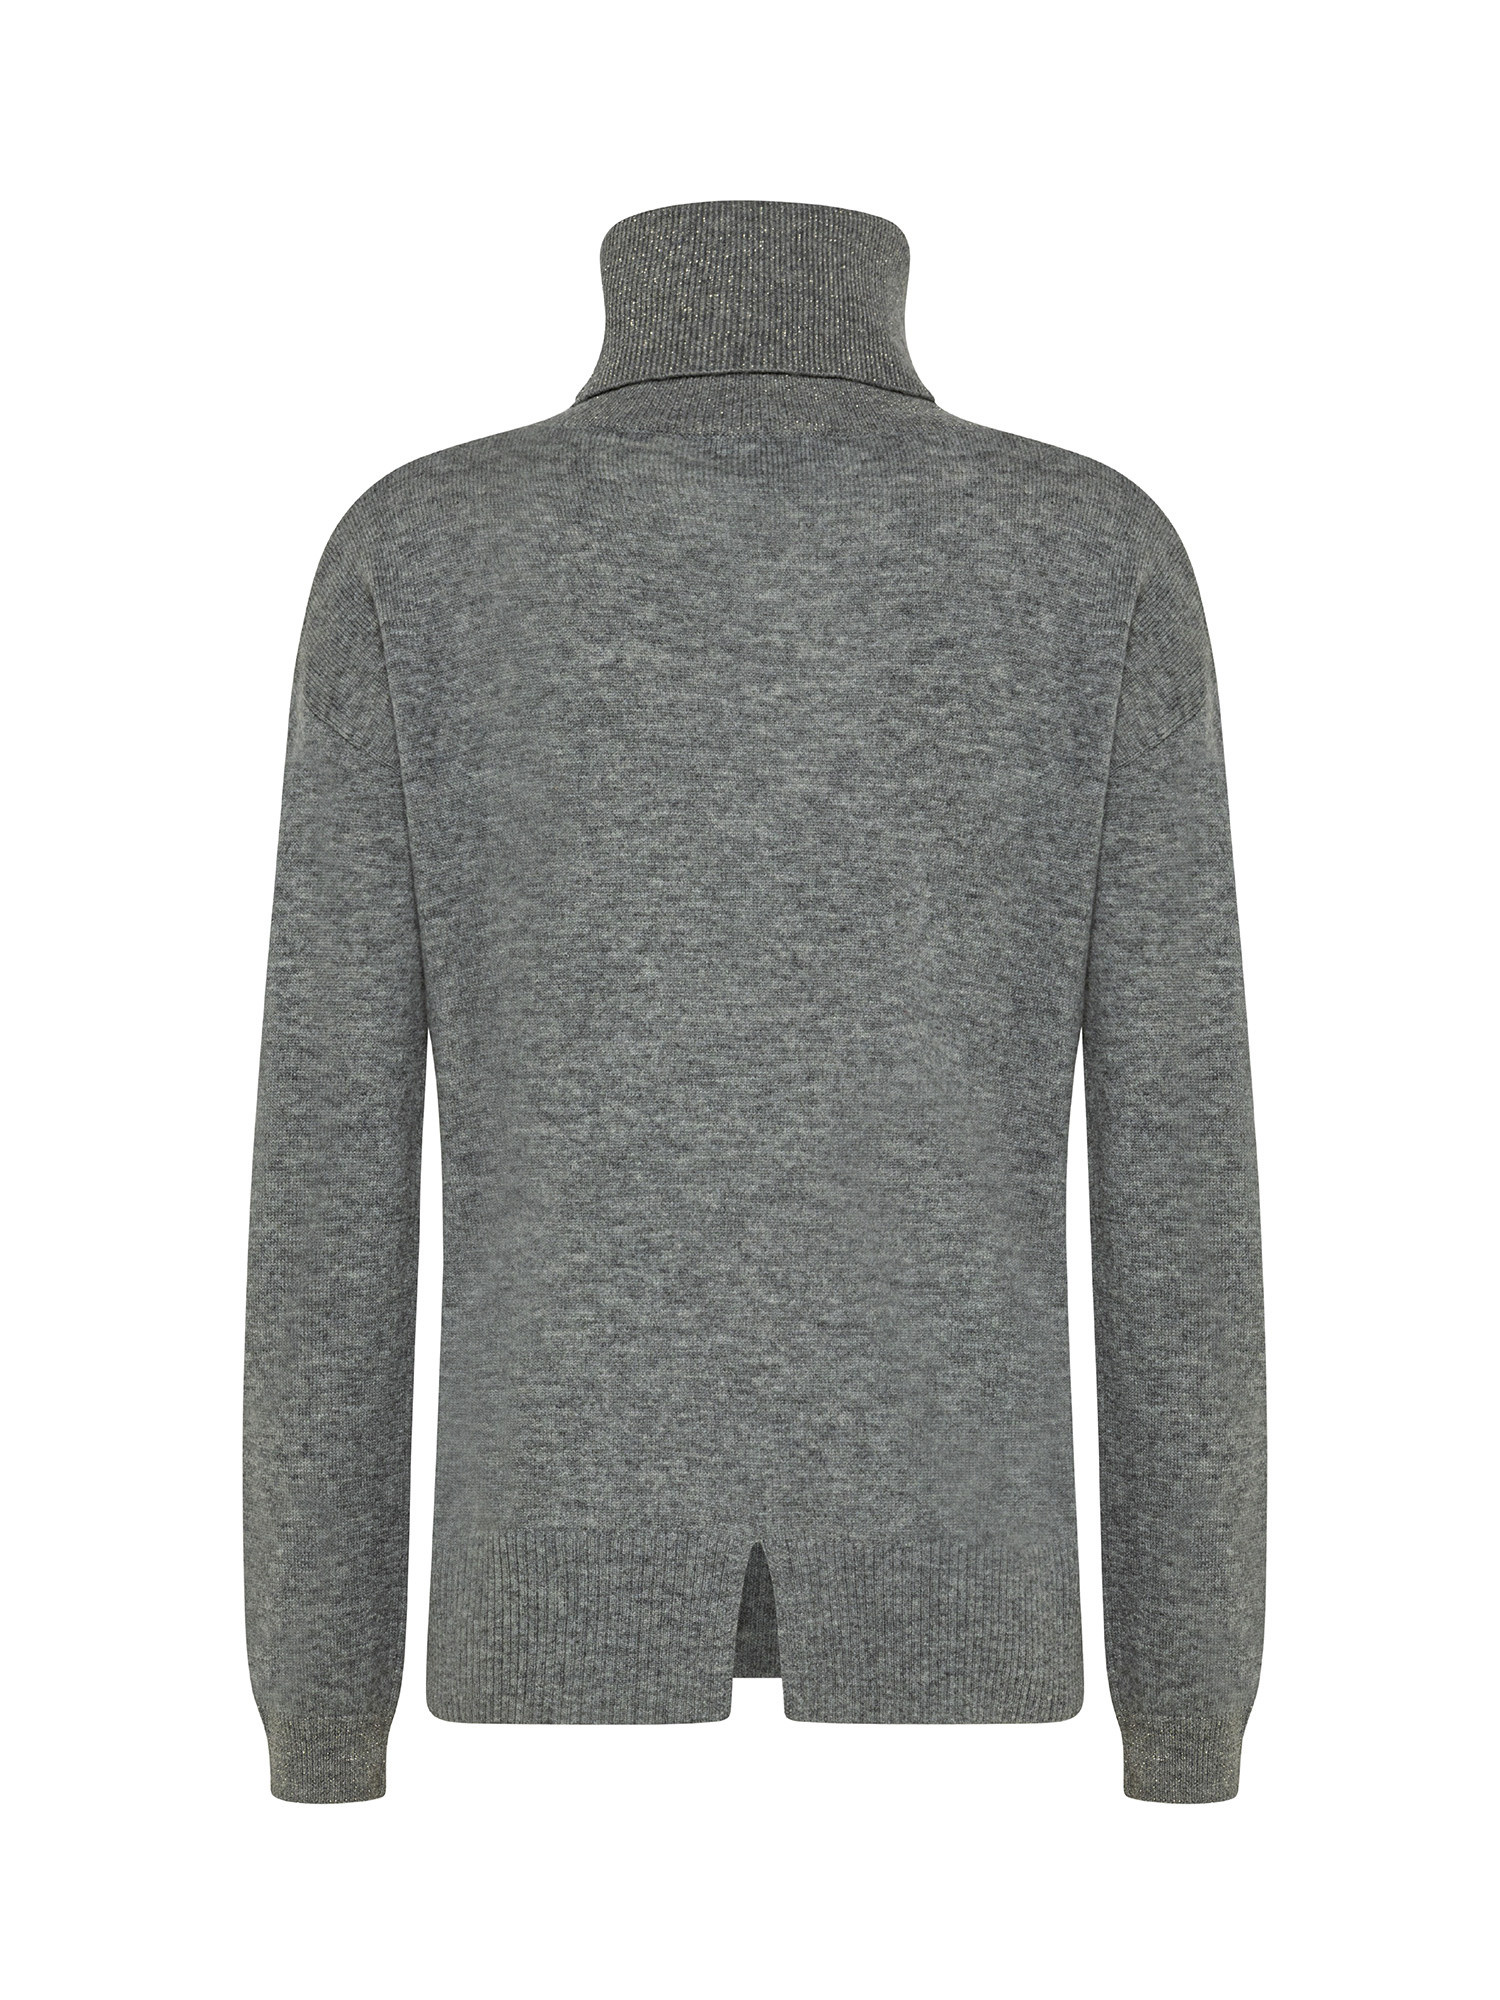 Koan - Pullover collo alto in lana e cashmere, Grigio, large image number 1